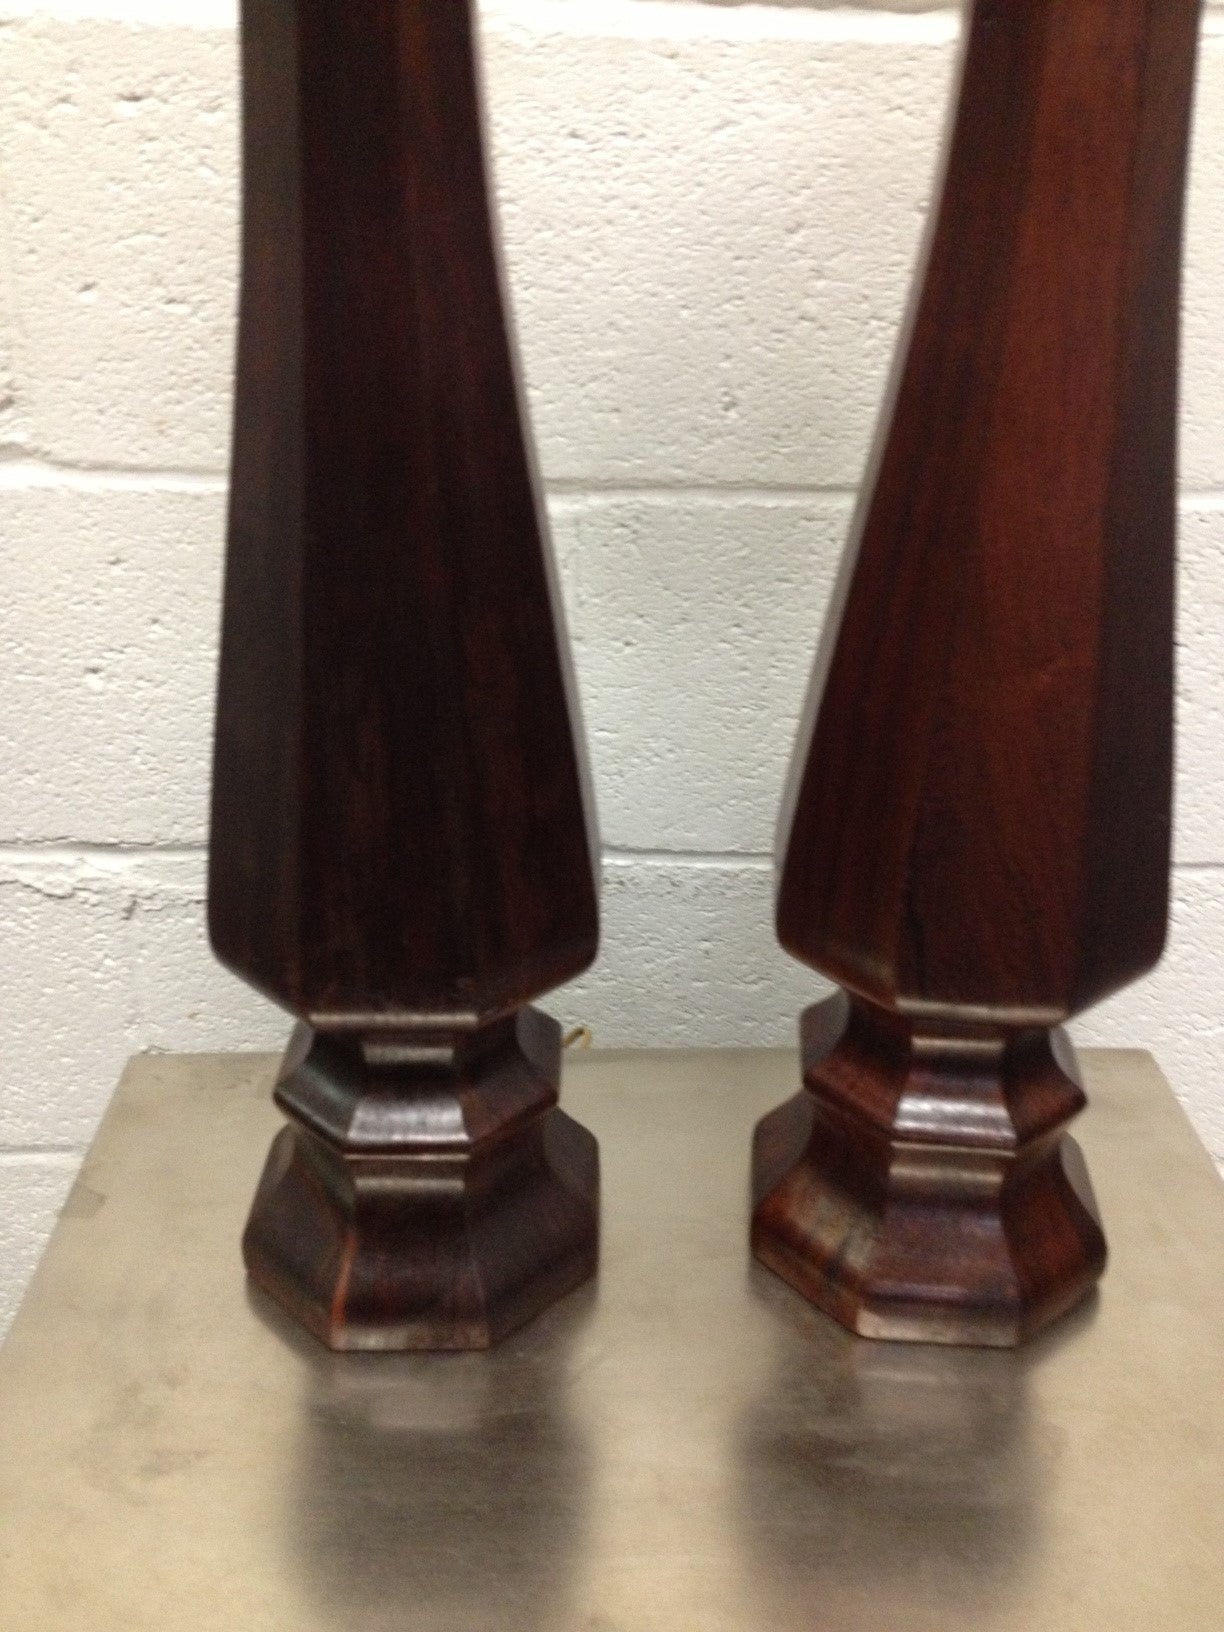 Pair of decorative rosewood lamps.
Measures: 35